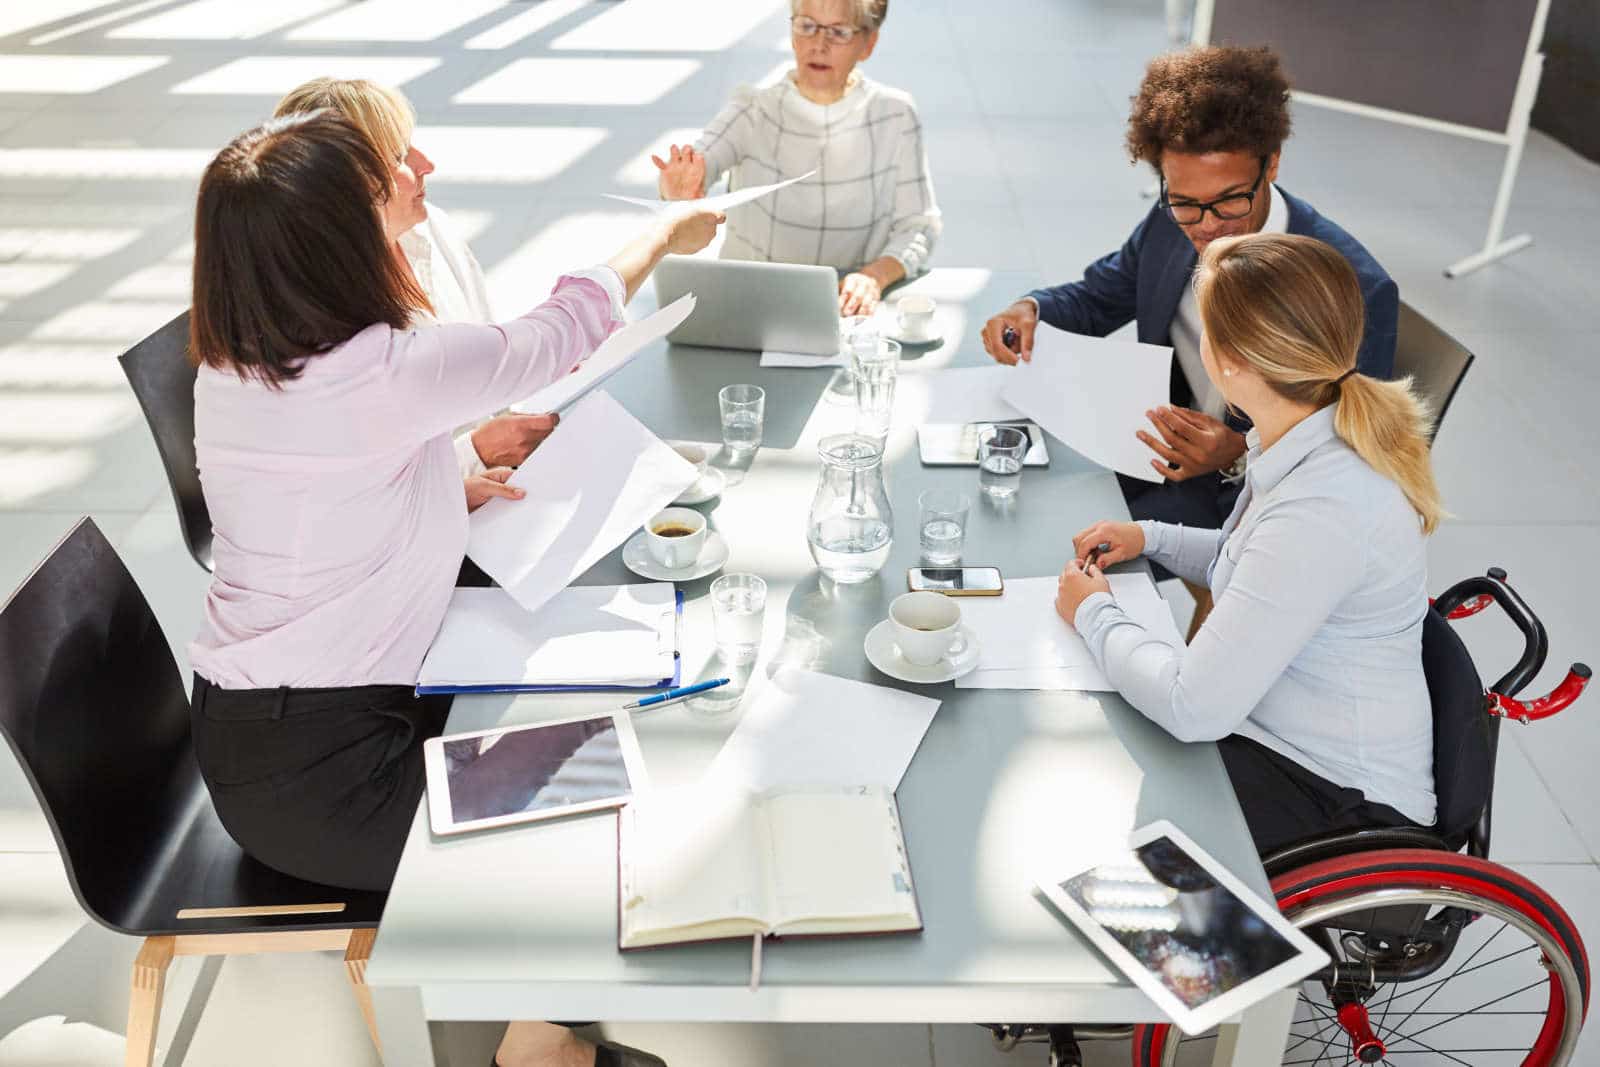 Wie Sie hybride Meetings inklusiv gestalten